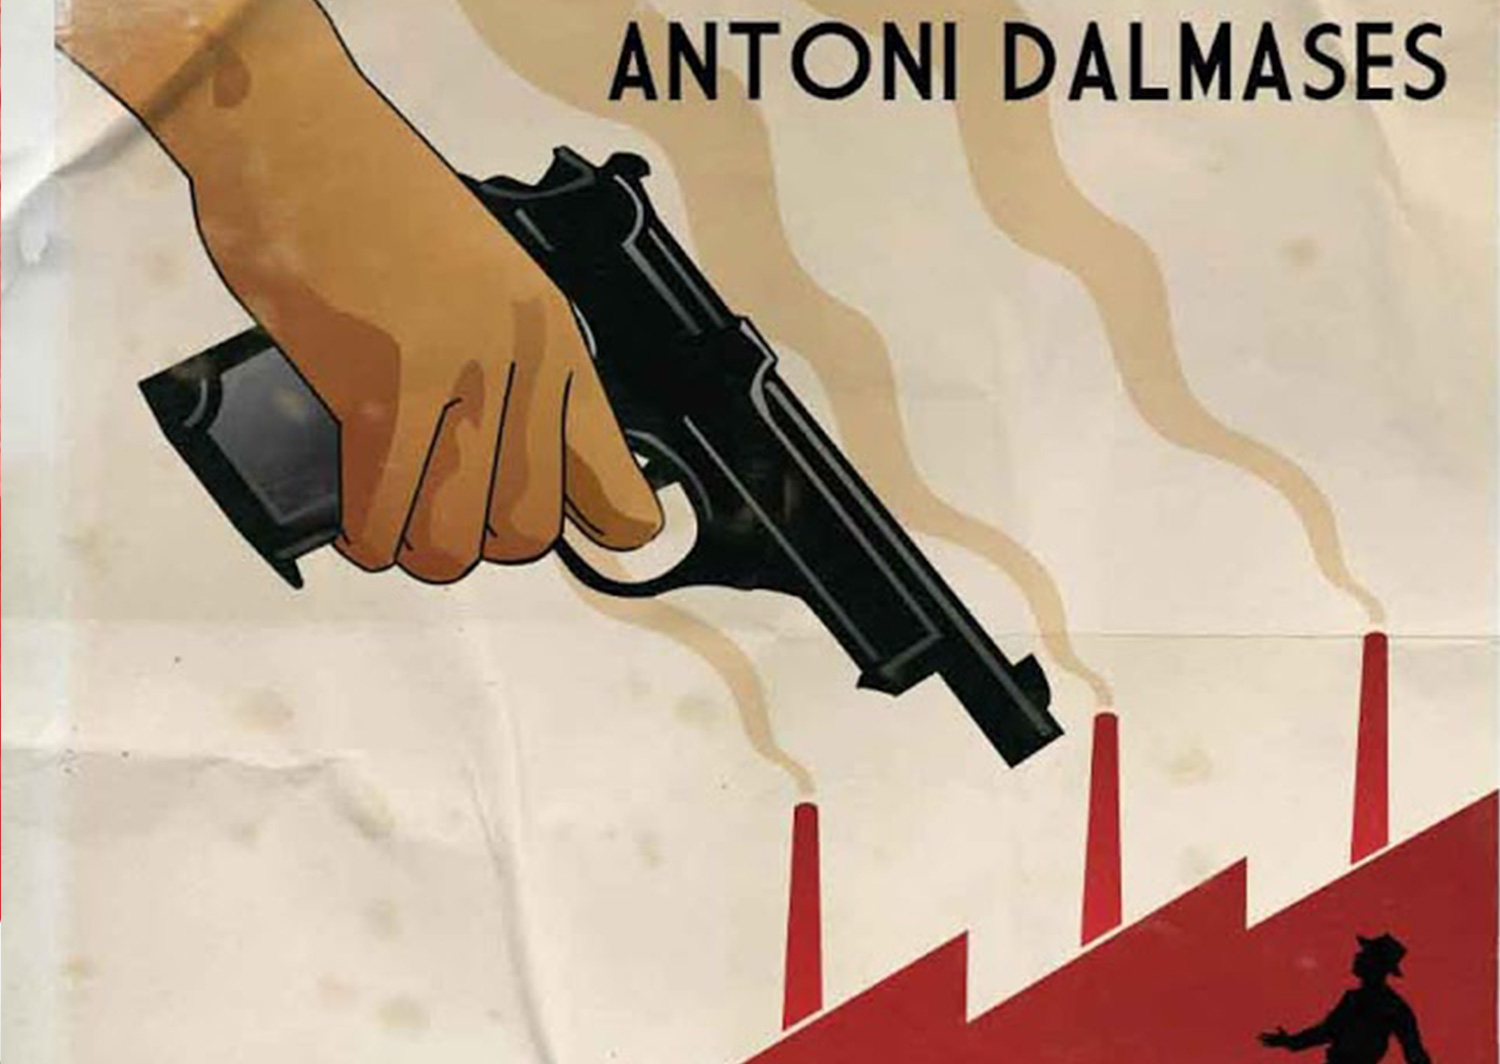 Antoni Dalmases ull per ull 1 (ojo por ojo - edición en castellano) poster arriba